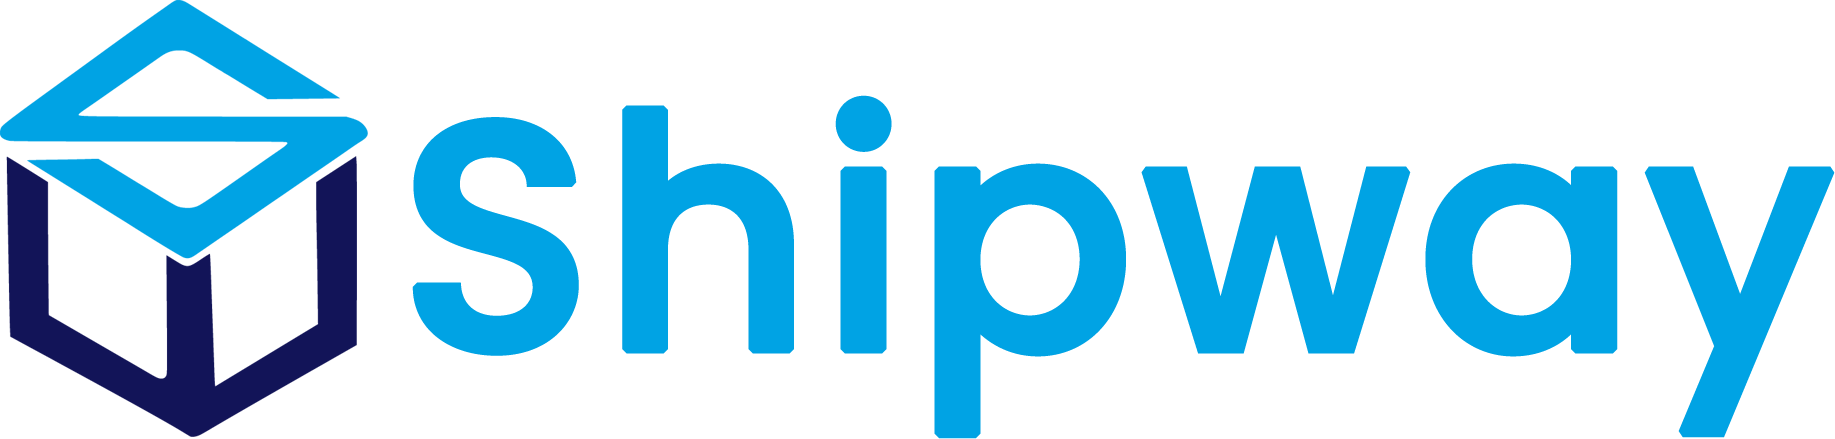 shipway-final-logo